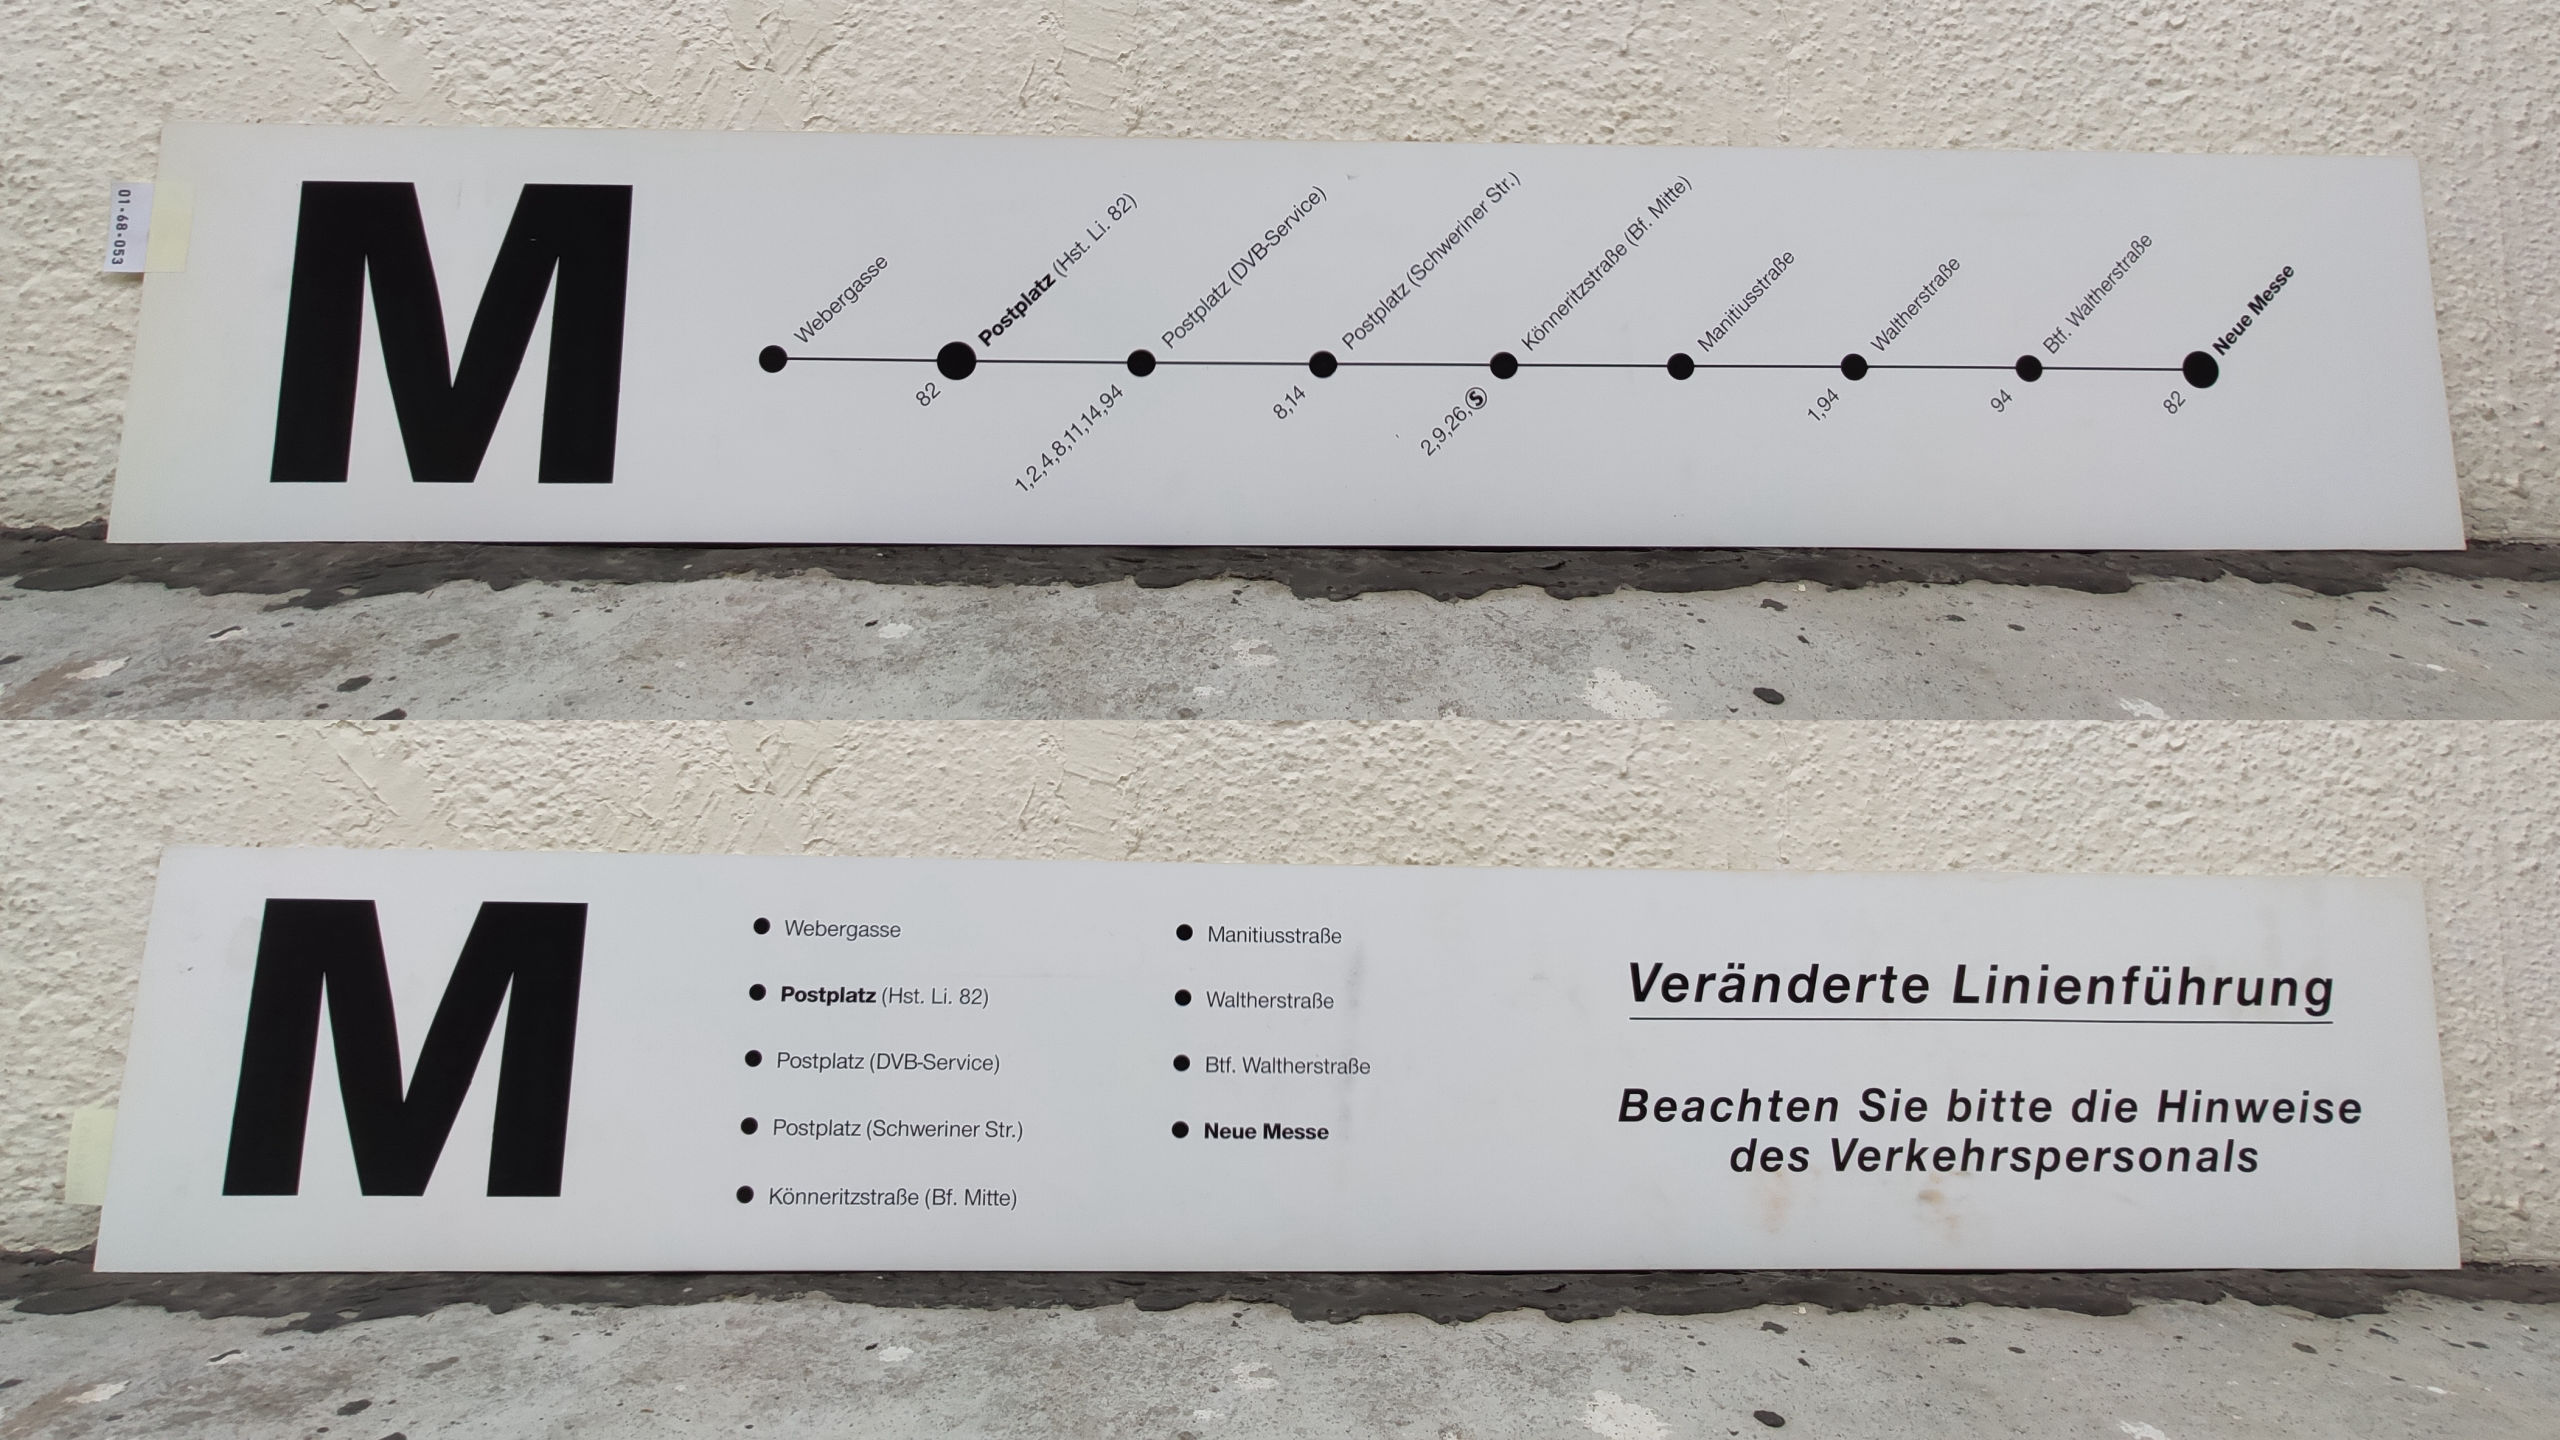 M Webergasse – Postplatz (Hst. Li. 82) – Neue Messe